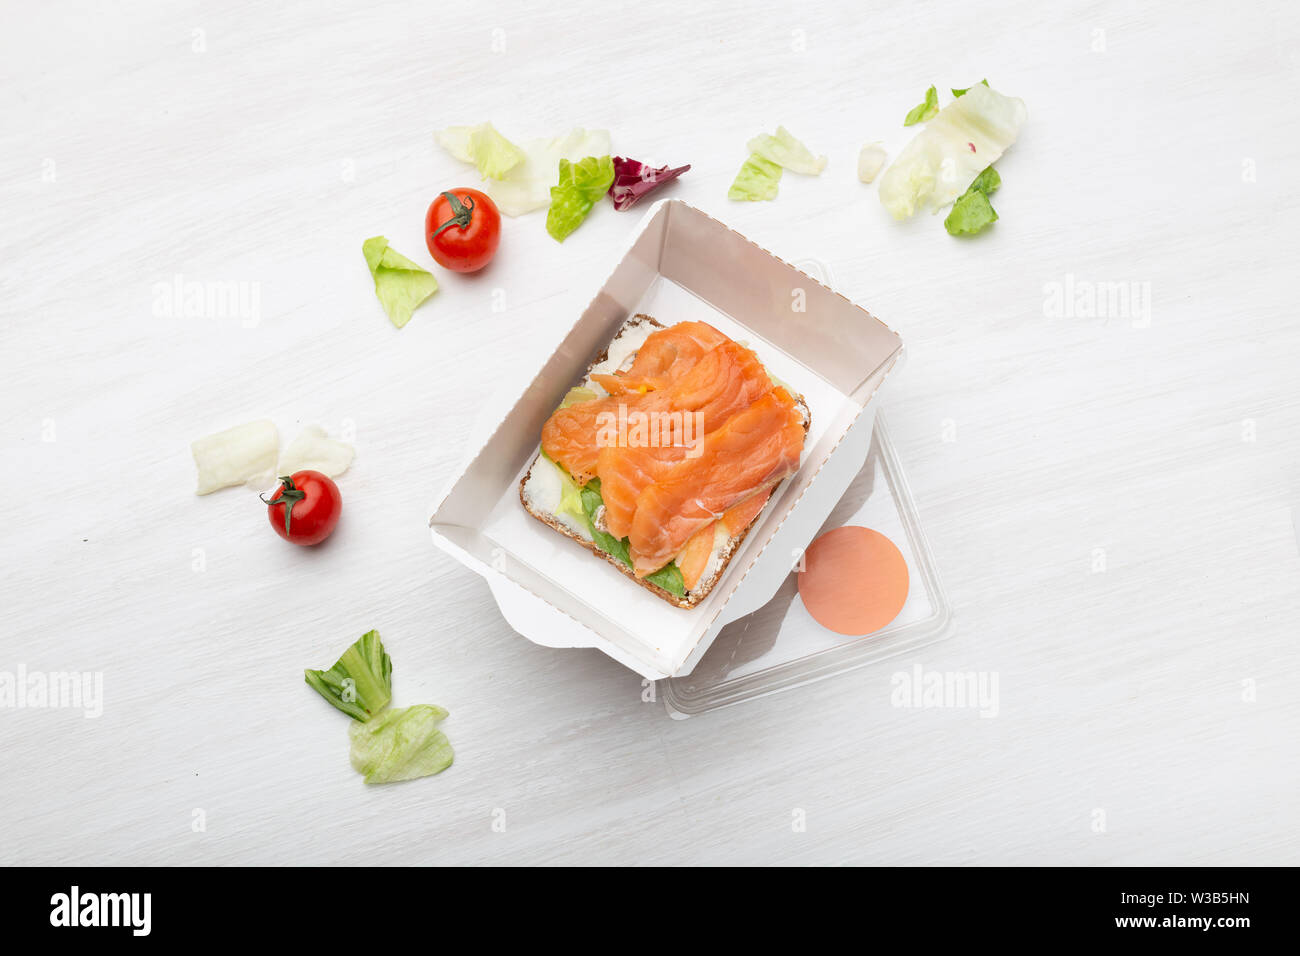 https://c8.alamy.com/compes/w3b5hn/vista-superior-de-sandwich-con-queso-blando-y-el-pez-rojo-se-encuentra-en-la-caja-de-almuerzo-junto-a-los-verdes-y-los-tomates-en-una-tabla-en-blanco-concepto-de-un-refrigerio-saludable-w3b5hn.jpg